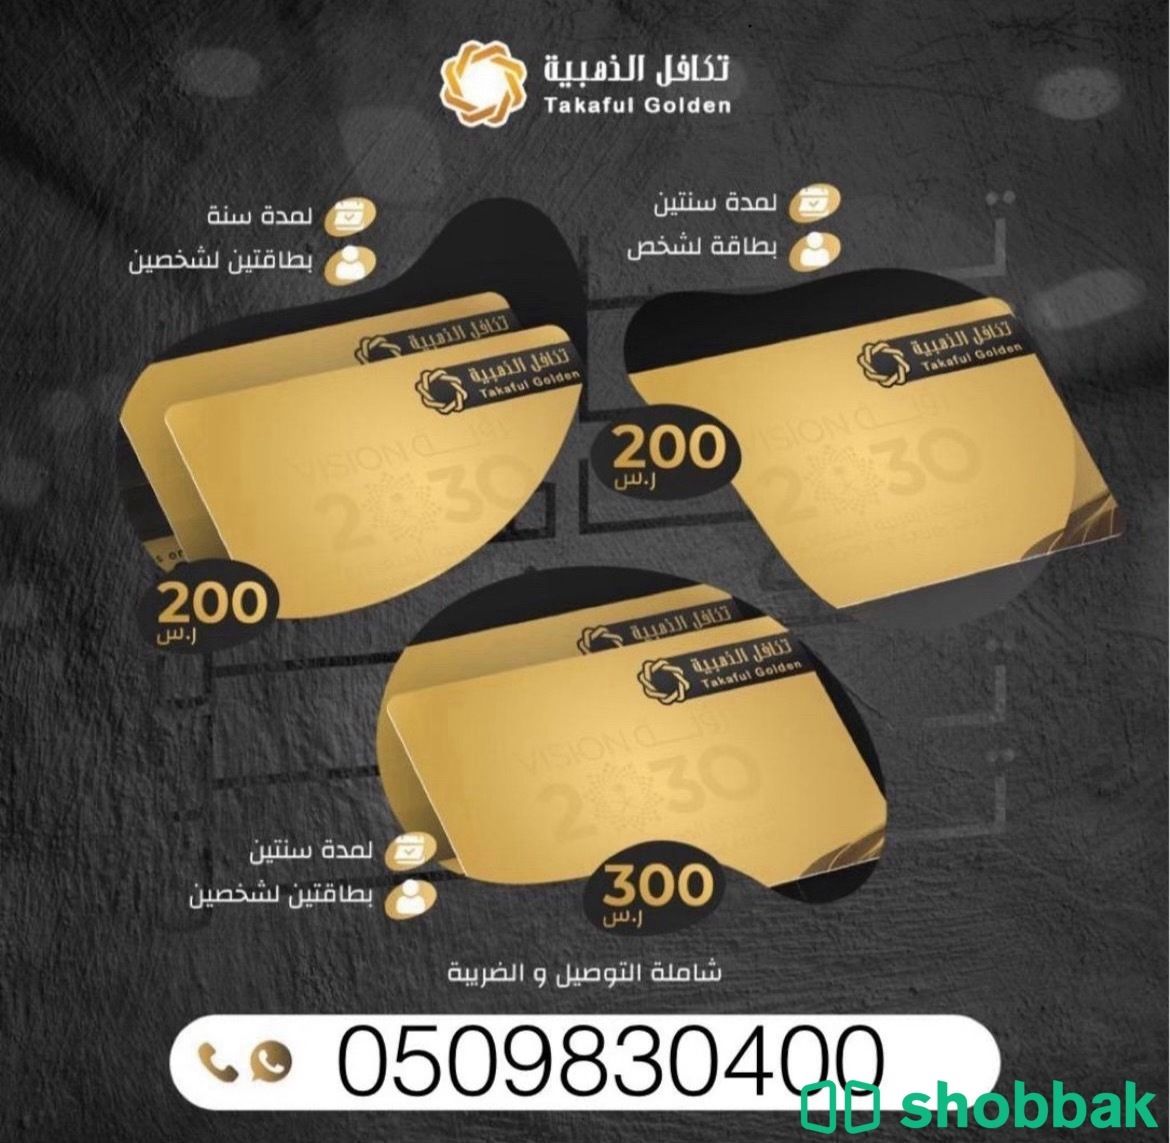 تكافل الذهبية Shobbak Saudi Arabia